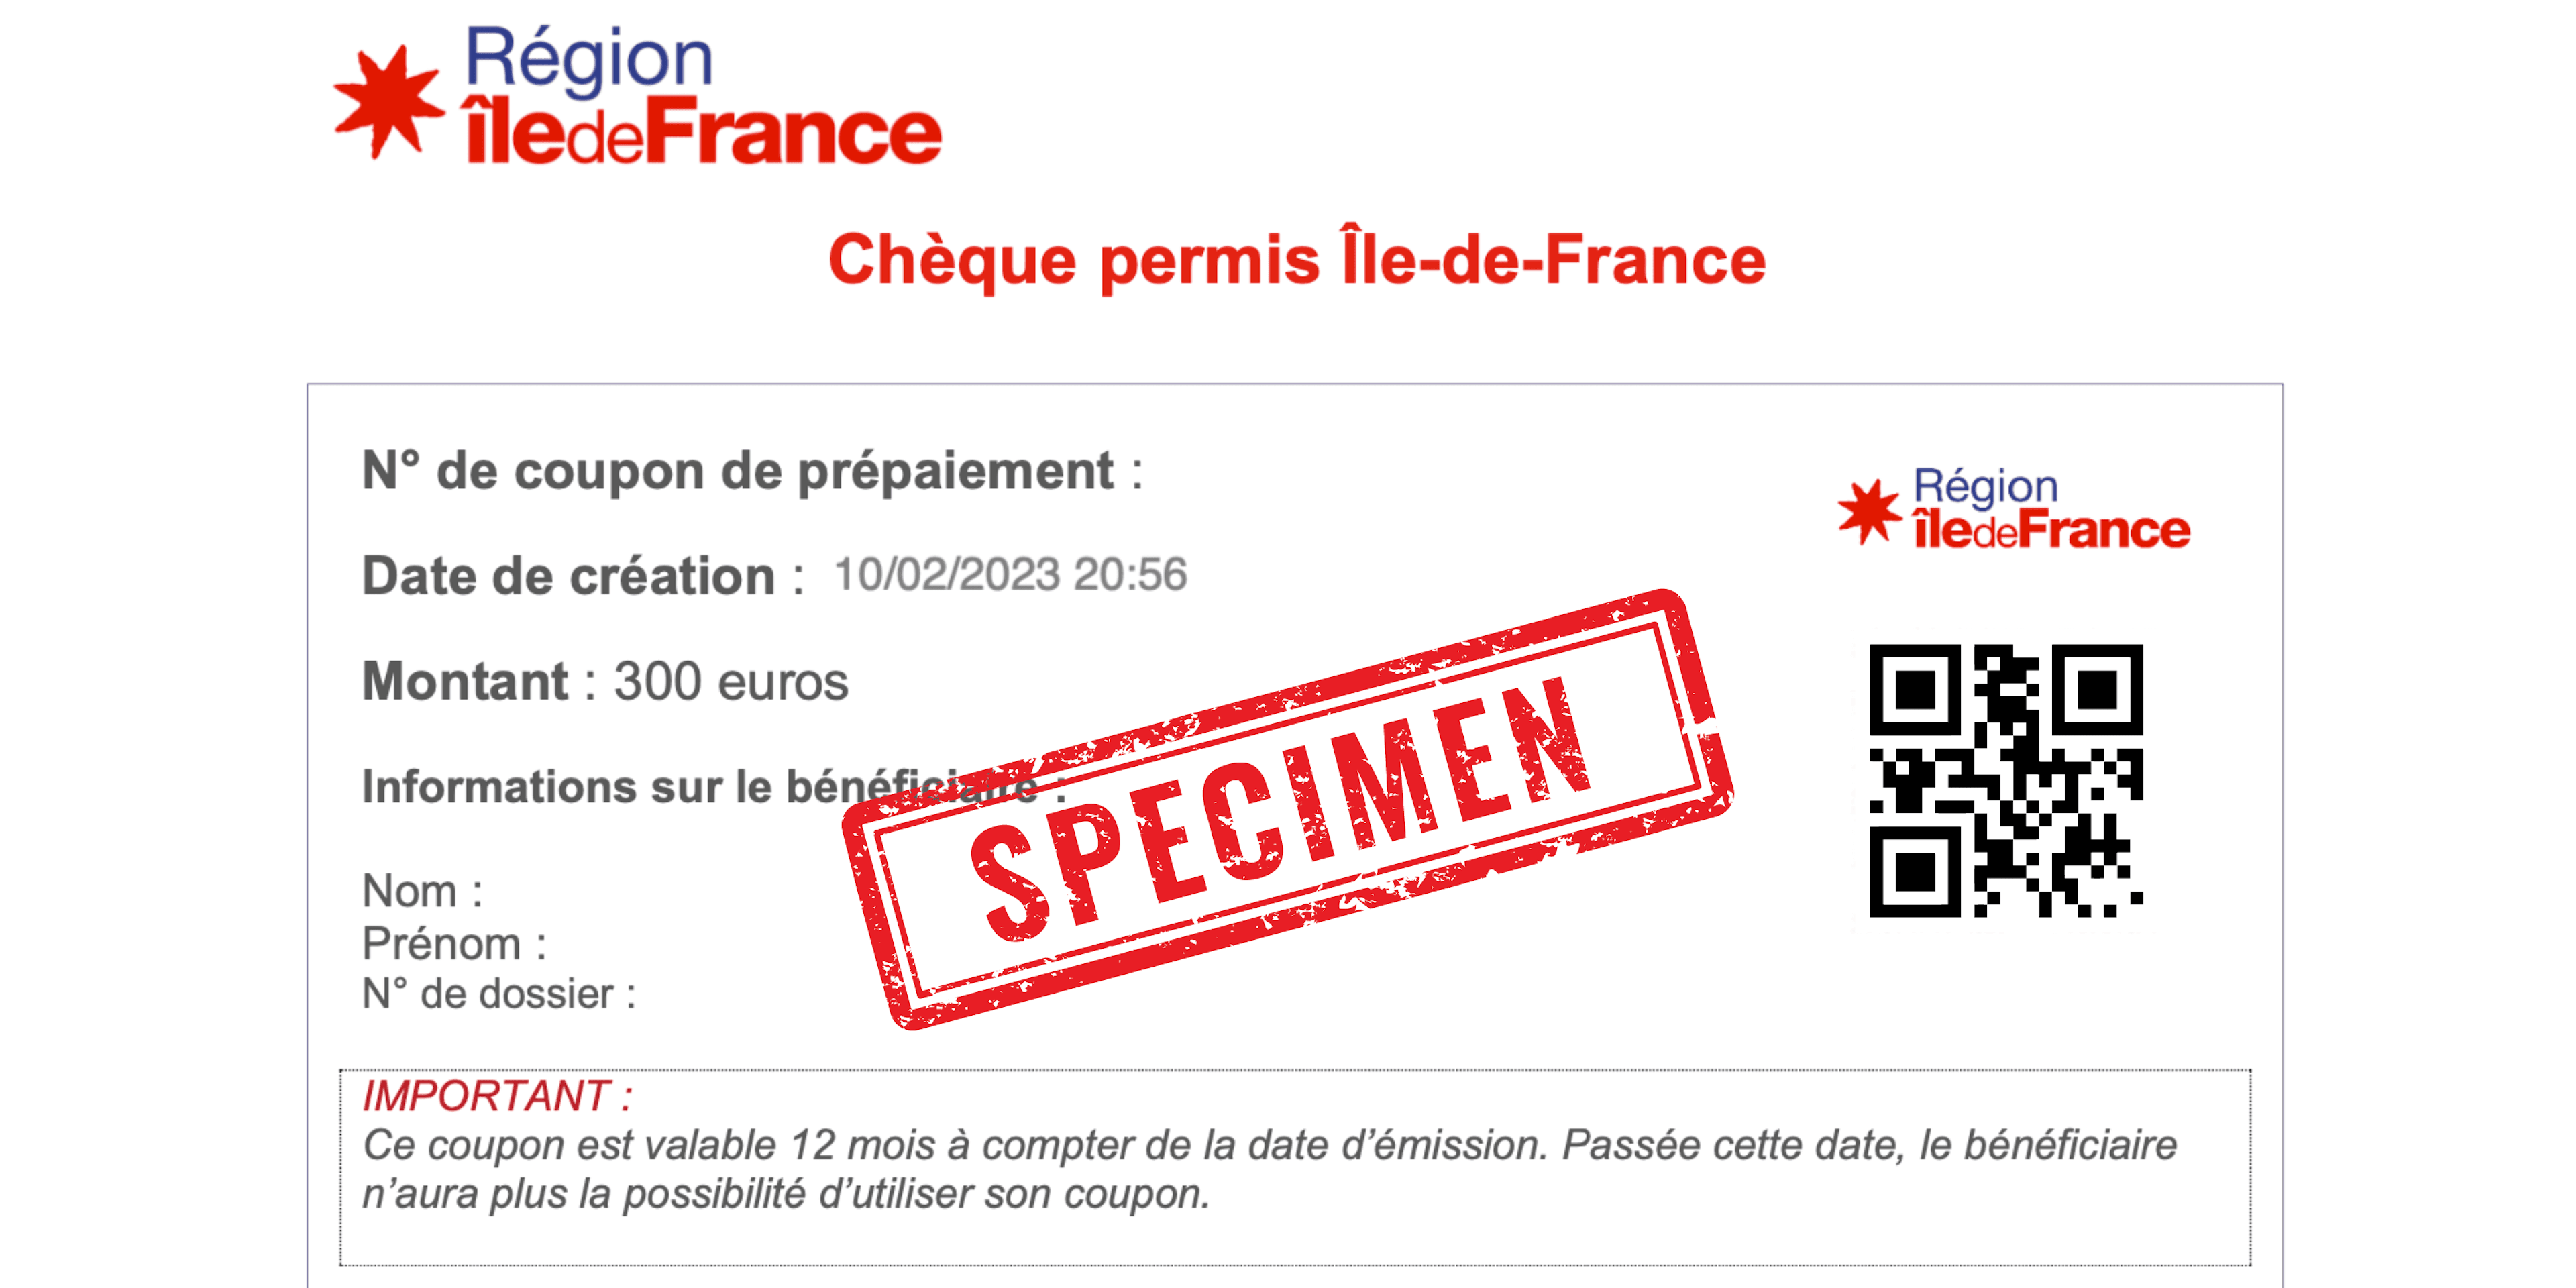 Chèque-permis-ile-de-france-specimen.png